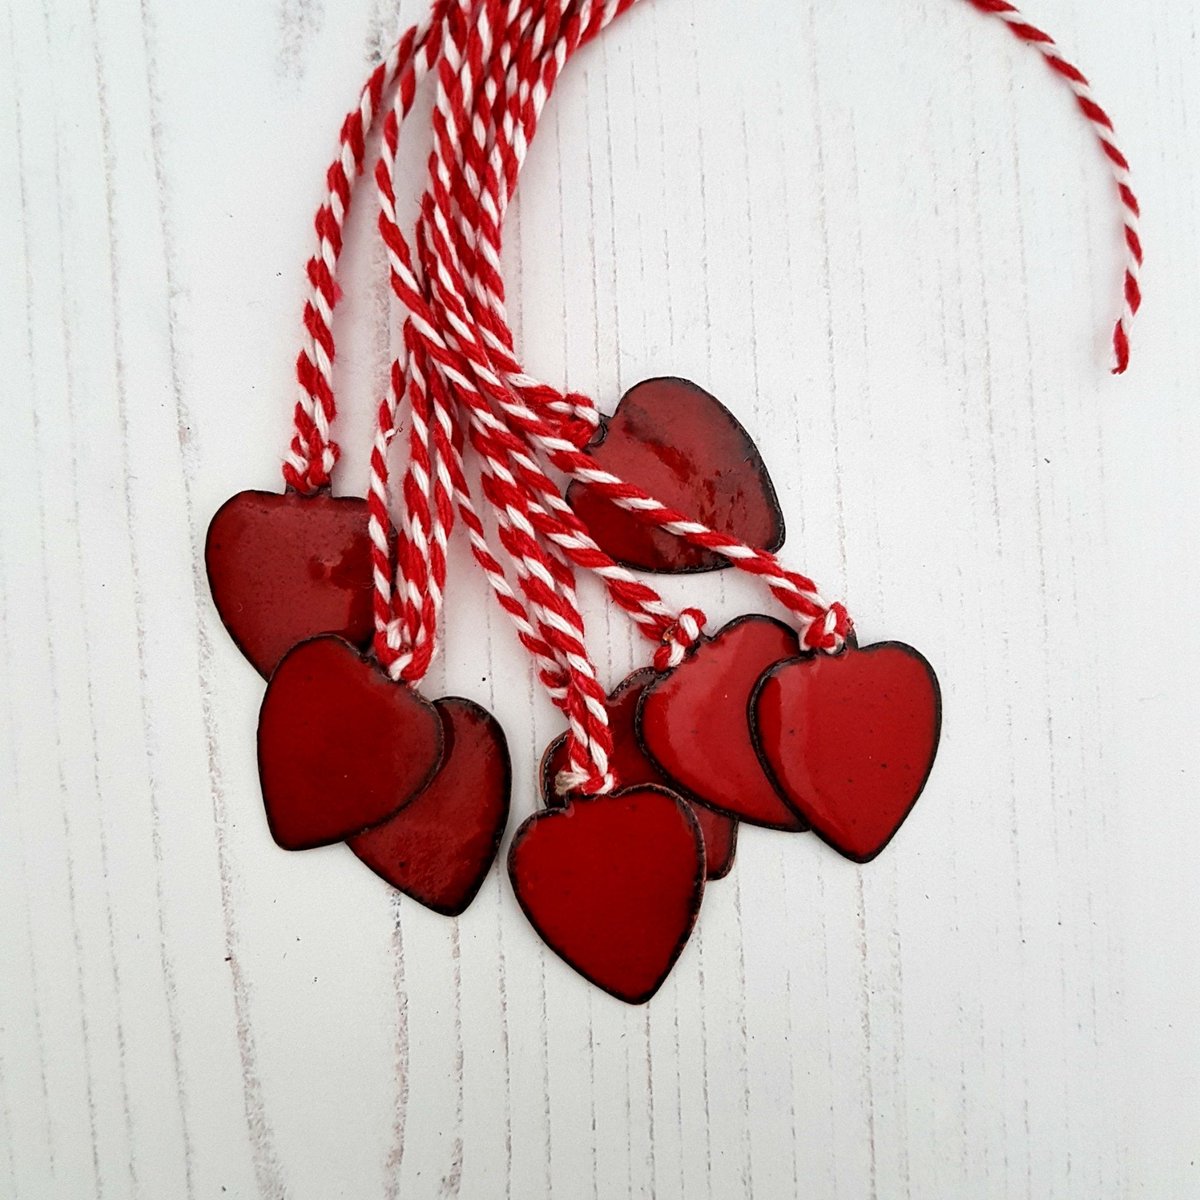 Enamel Heart Gift Tags tuppu.net/566c5ab5 #MHHSBD #inbizhour #shopsmall #UKHashtags ##UKGiftHour #giftideas #HandmadeHour #bizbubble